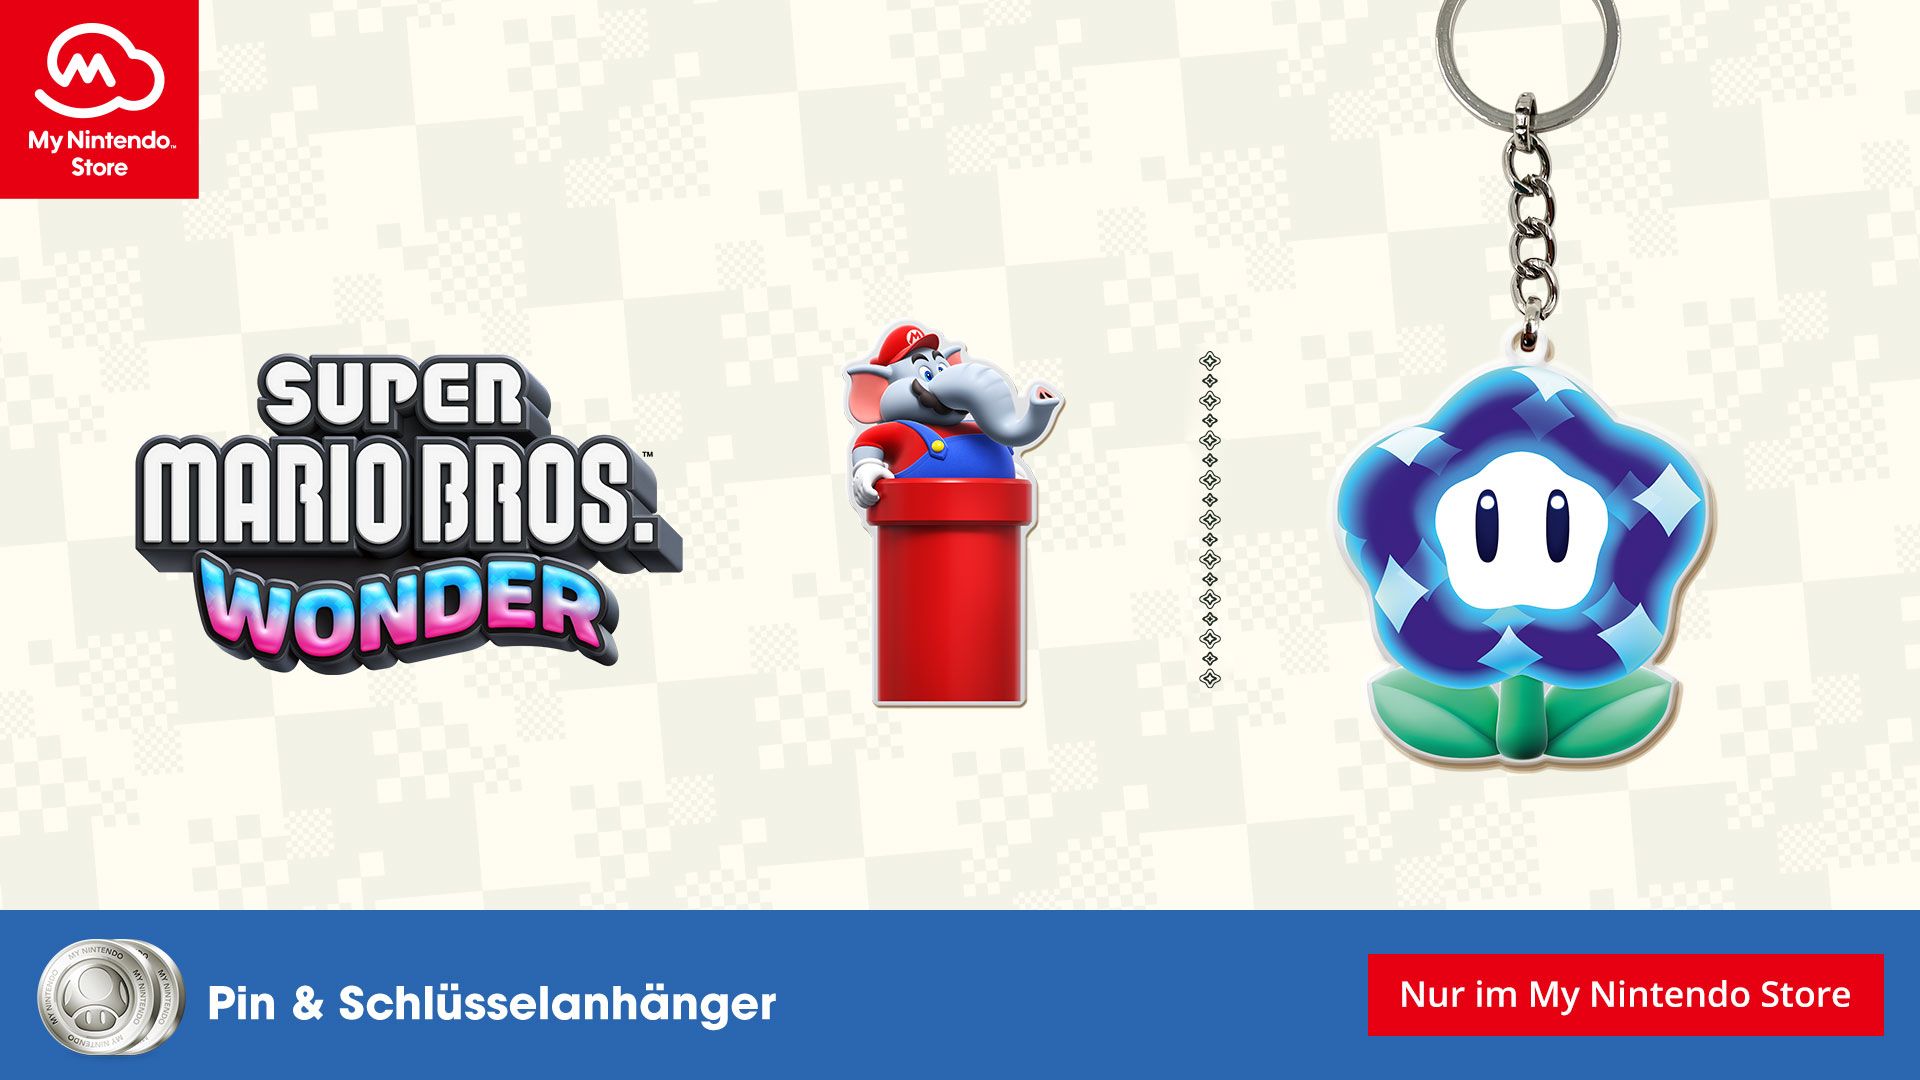 #Super Mario Bros. Wonder: Diese zwei neuen Prämien könnt ihr jetzt gratis erhalten